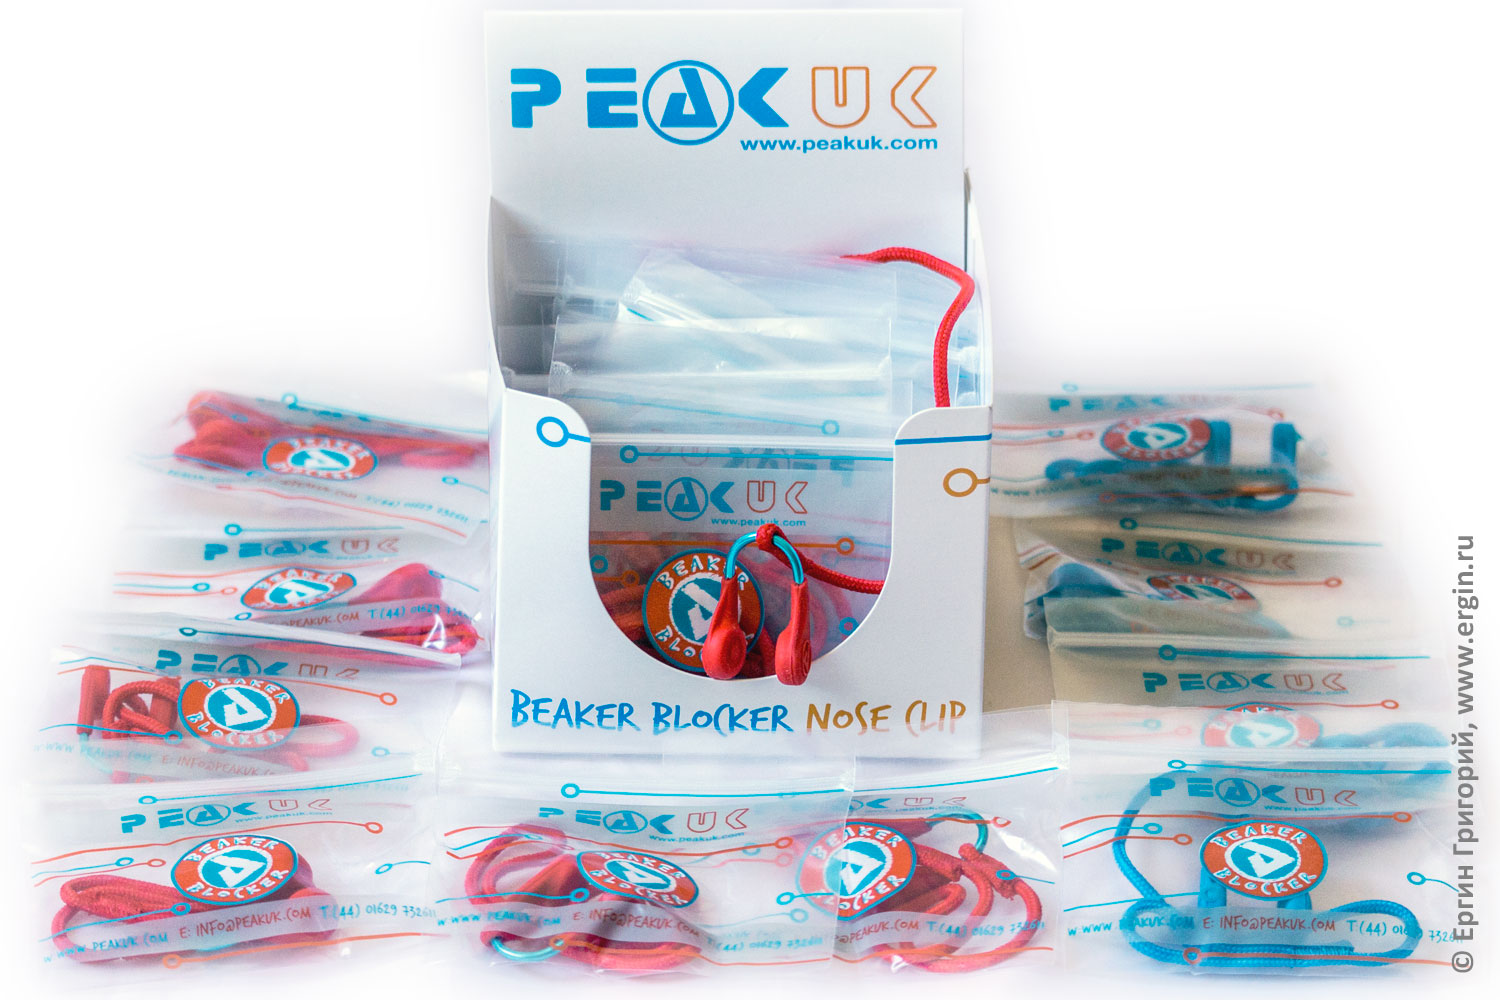 Nose clip Beaker Blocker PeakUK купить продажа прищепки для каякера лучшие недорого дешево